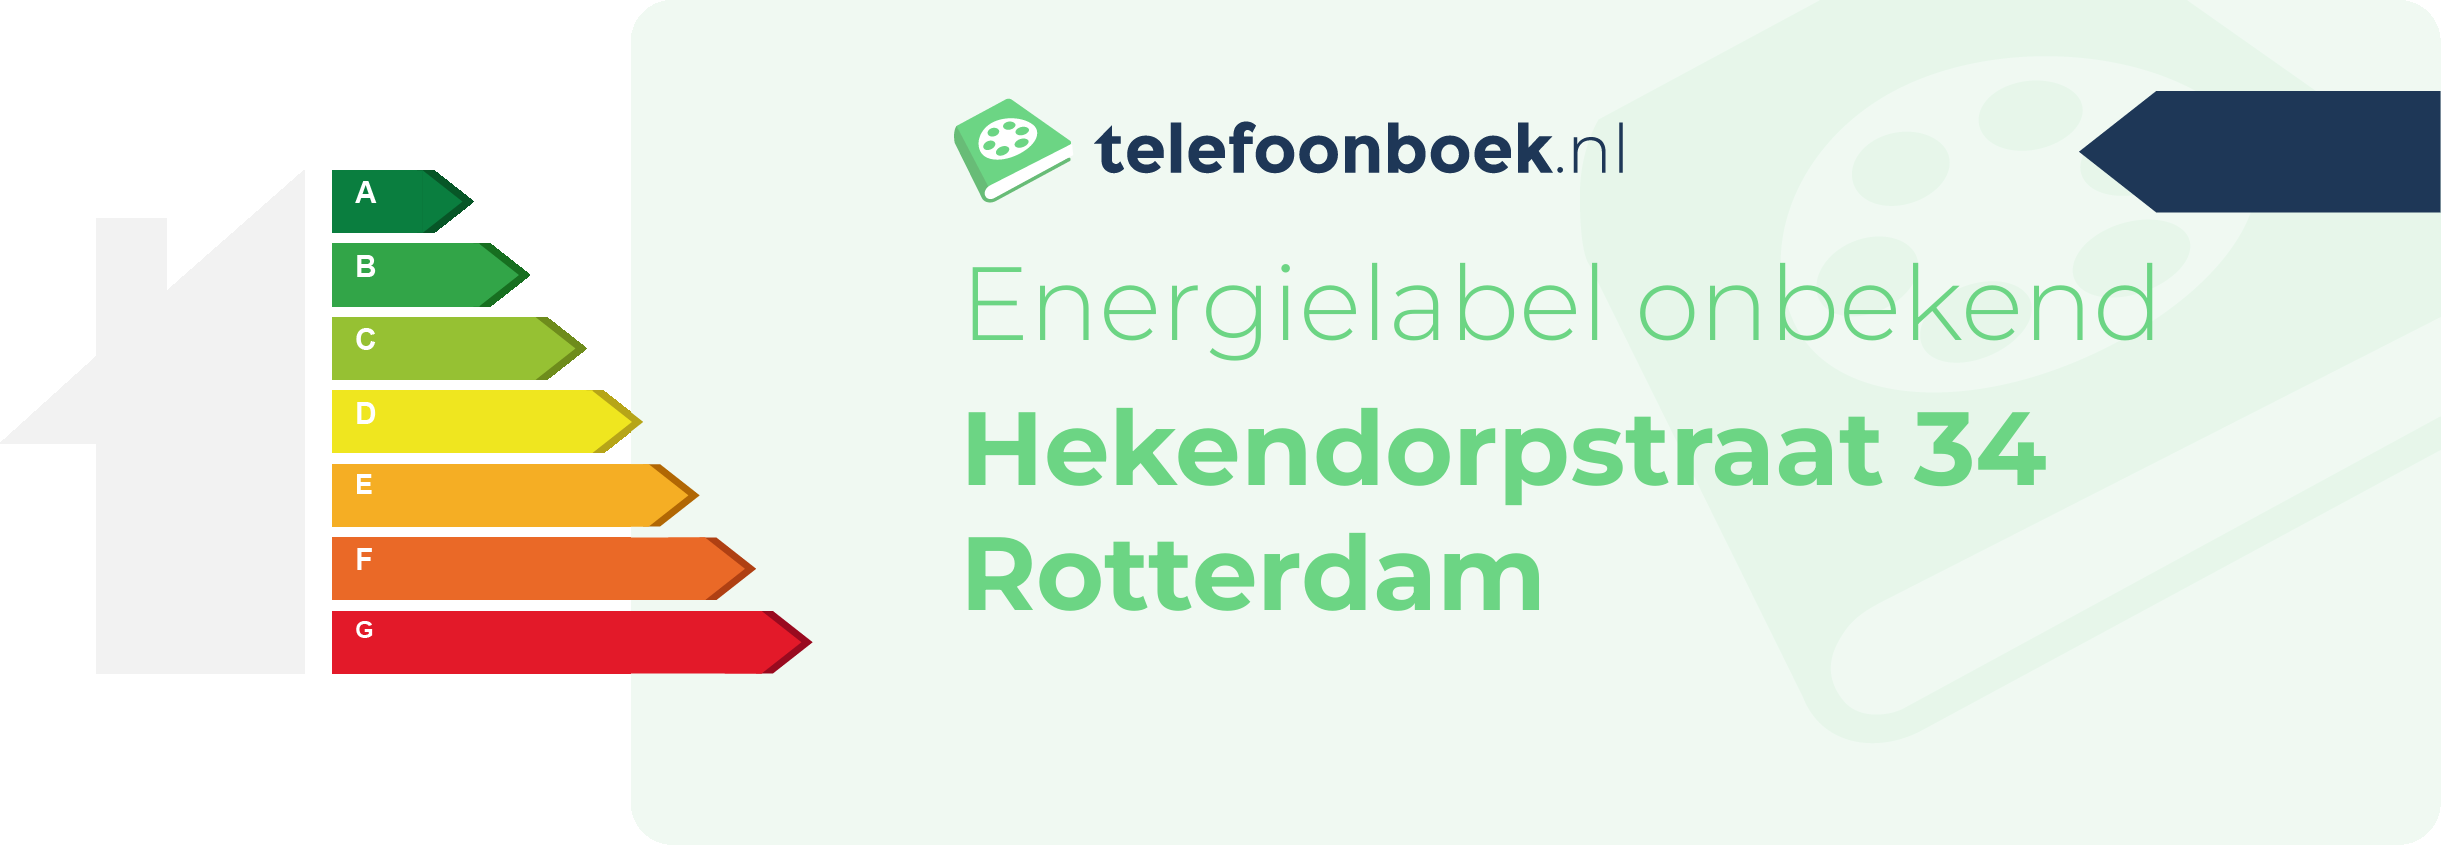 Energielabel Hekendorpstraat 34 Rotterdam